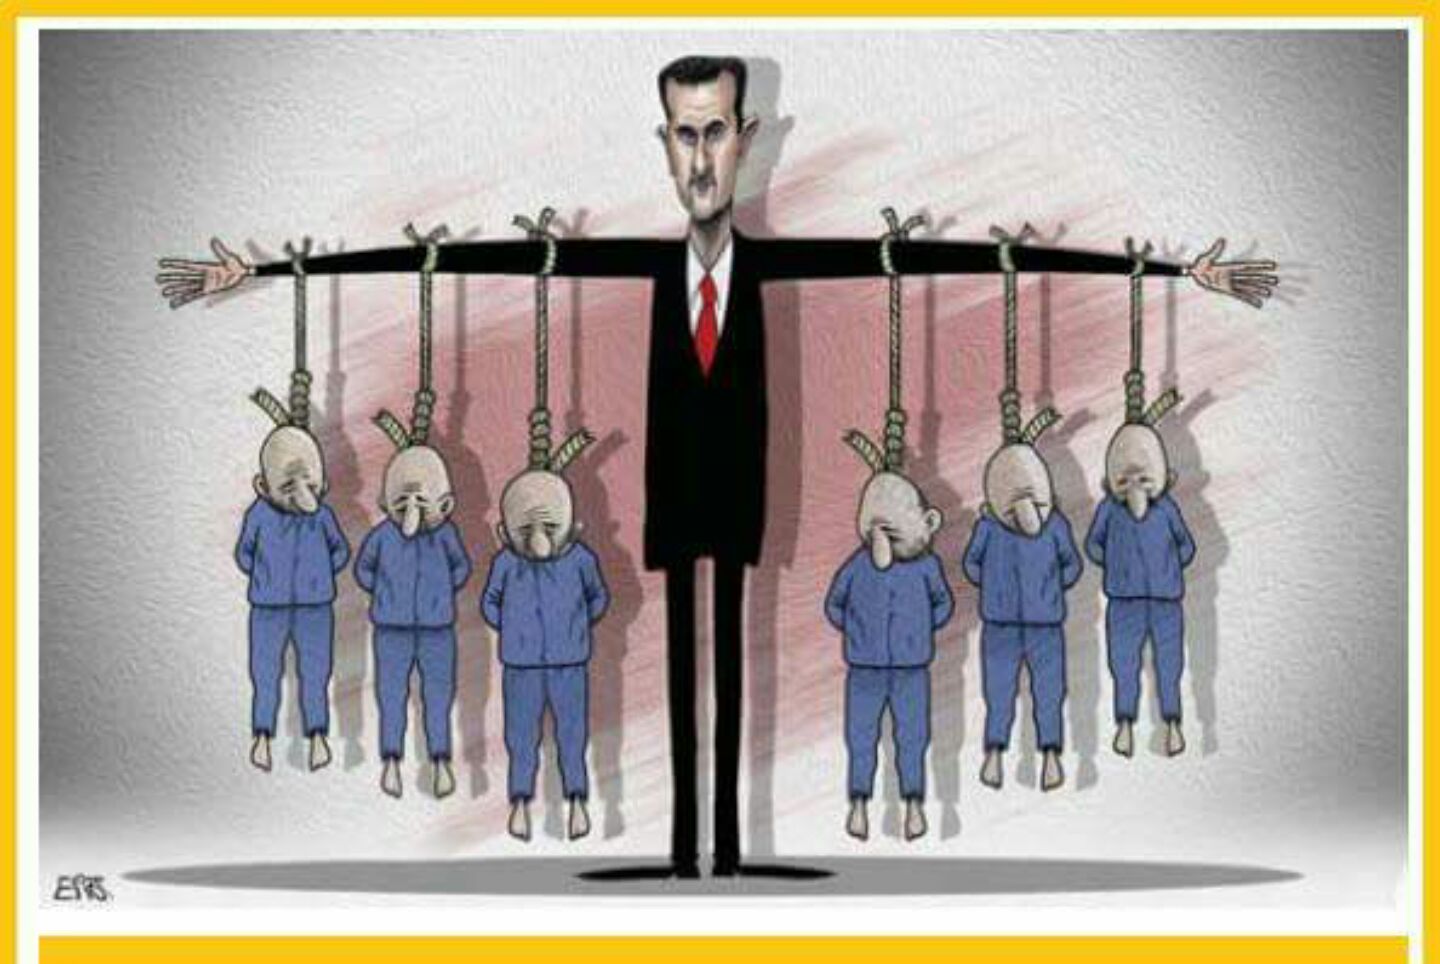 Syria opposition demands international observers in regime jails